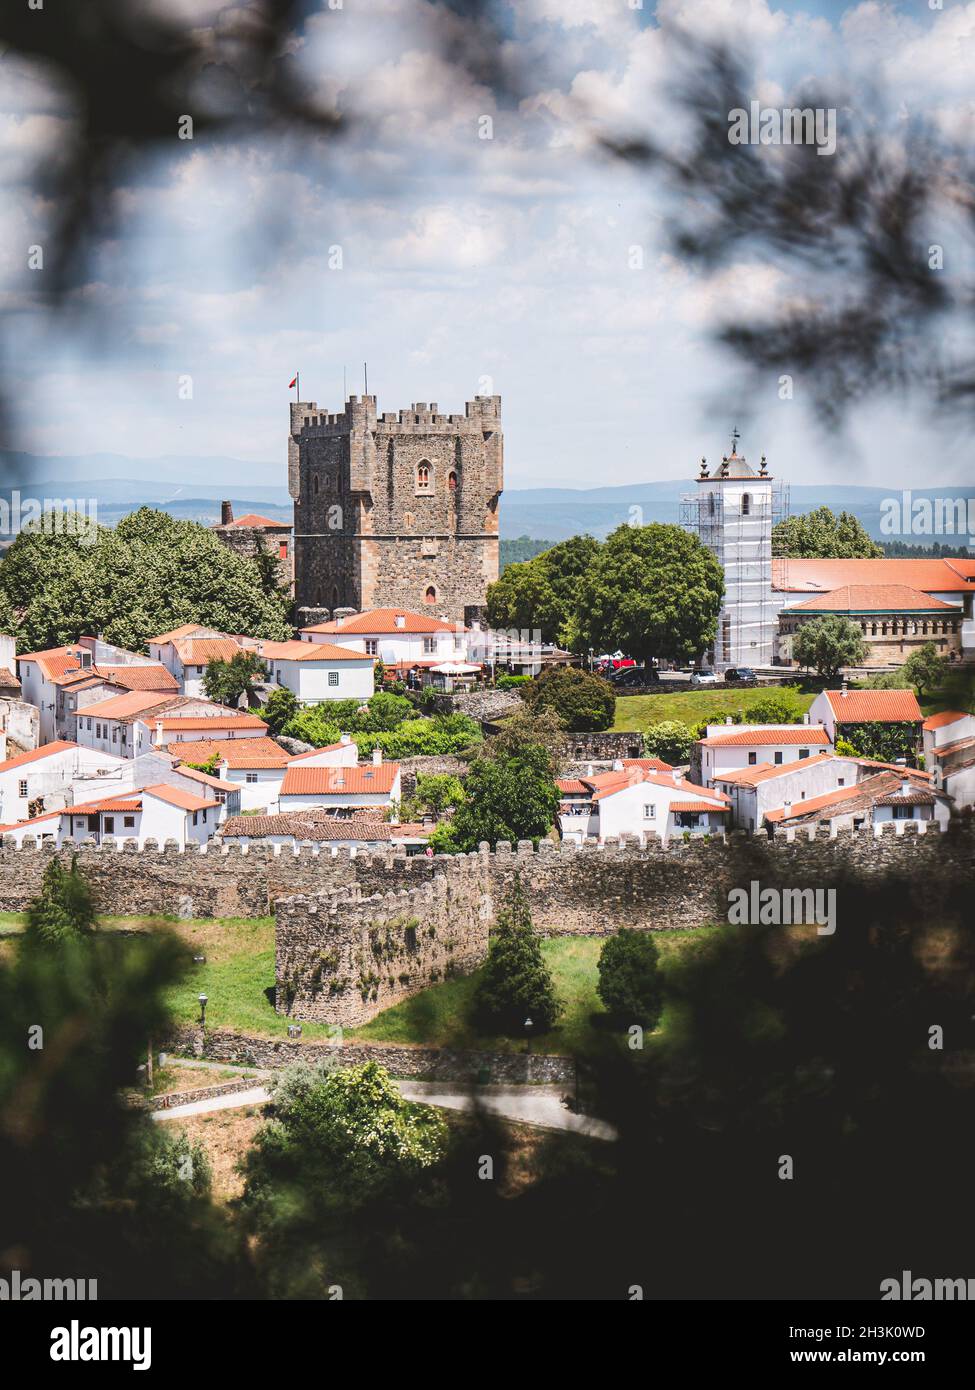 braganca castle, portugal, in vertical frame Stock Photo